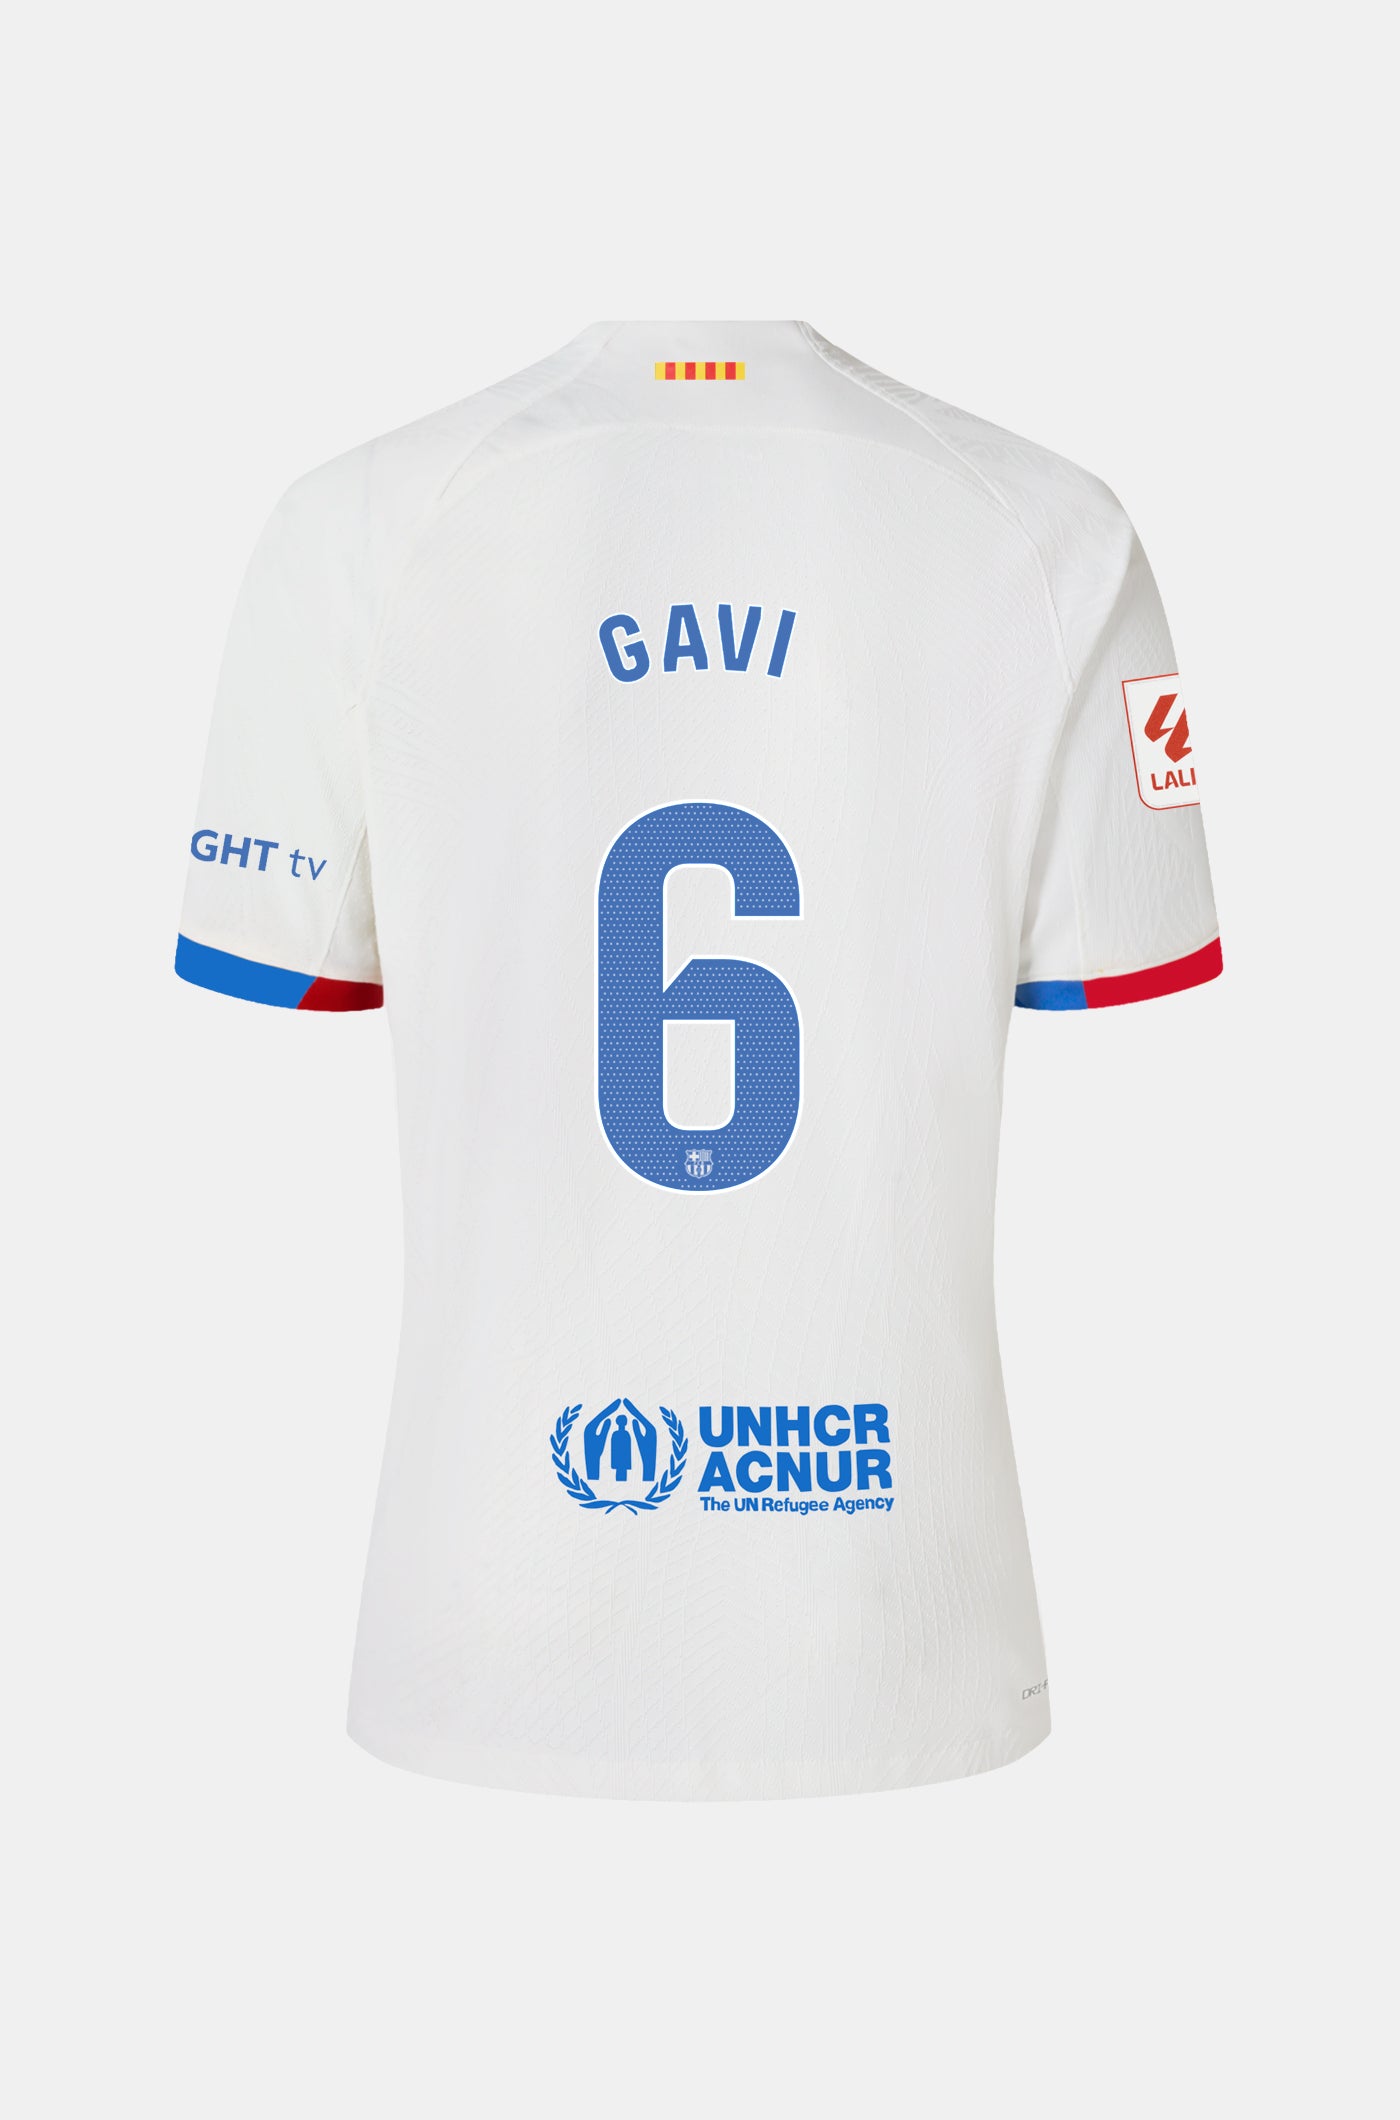 LFP FC Barcelona away shirt 23/24  - GAVI